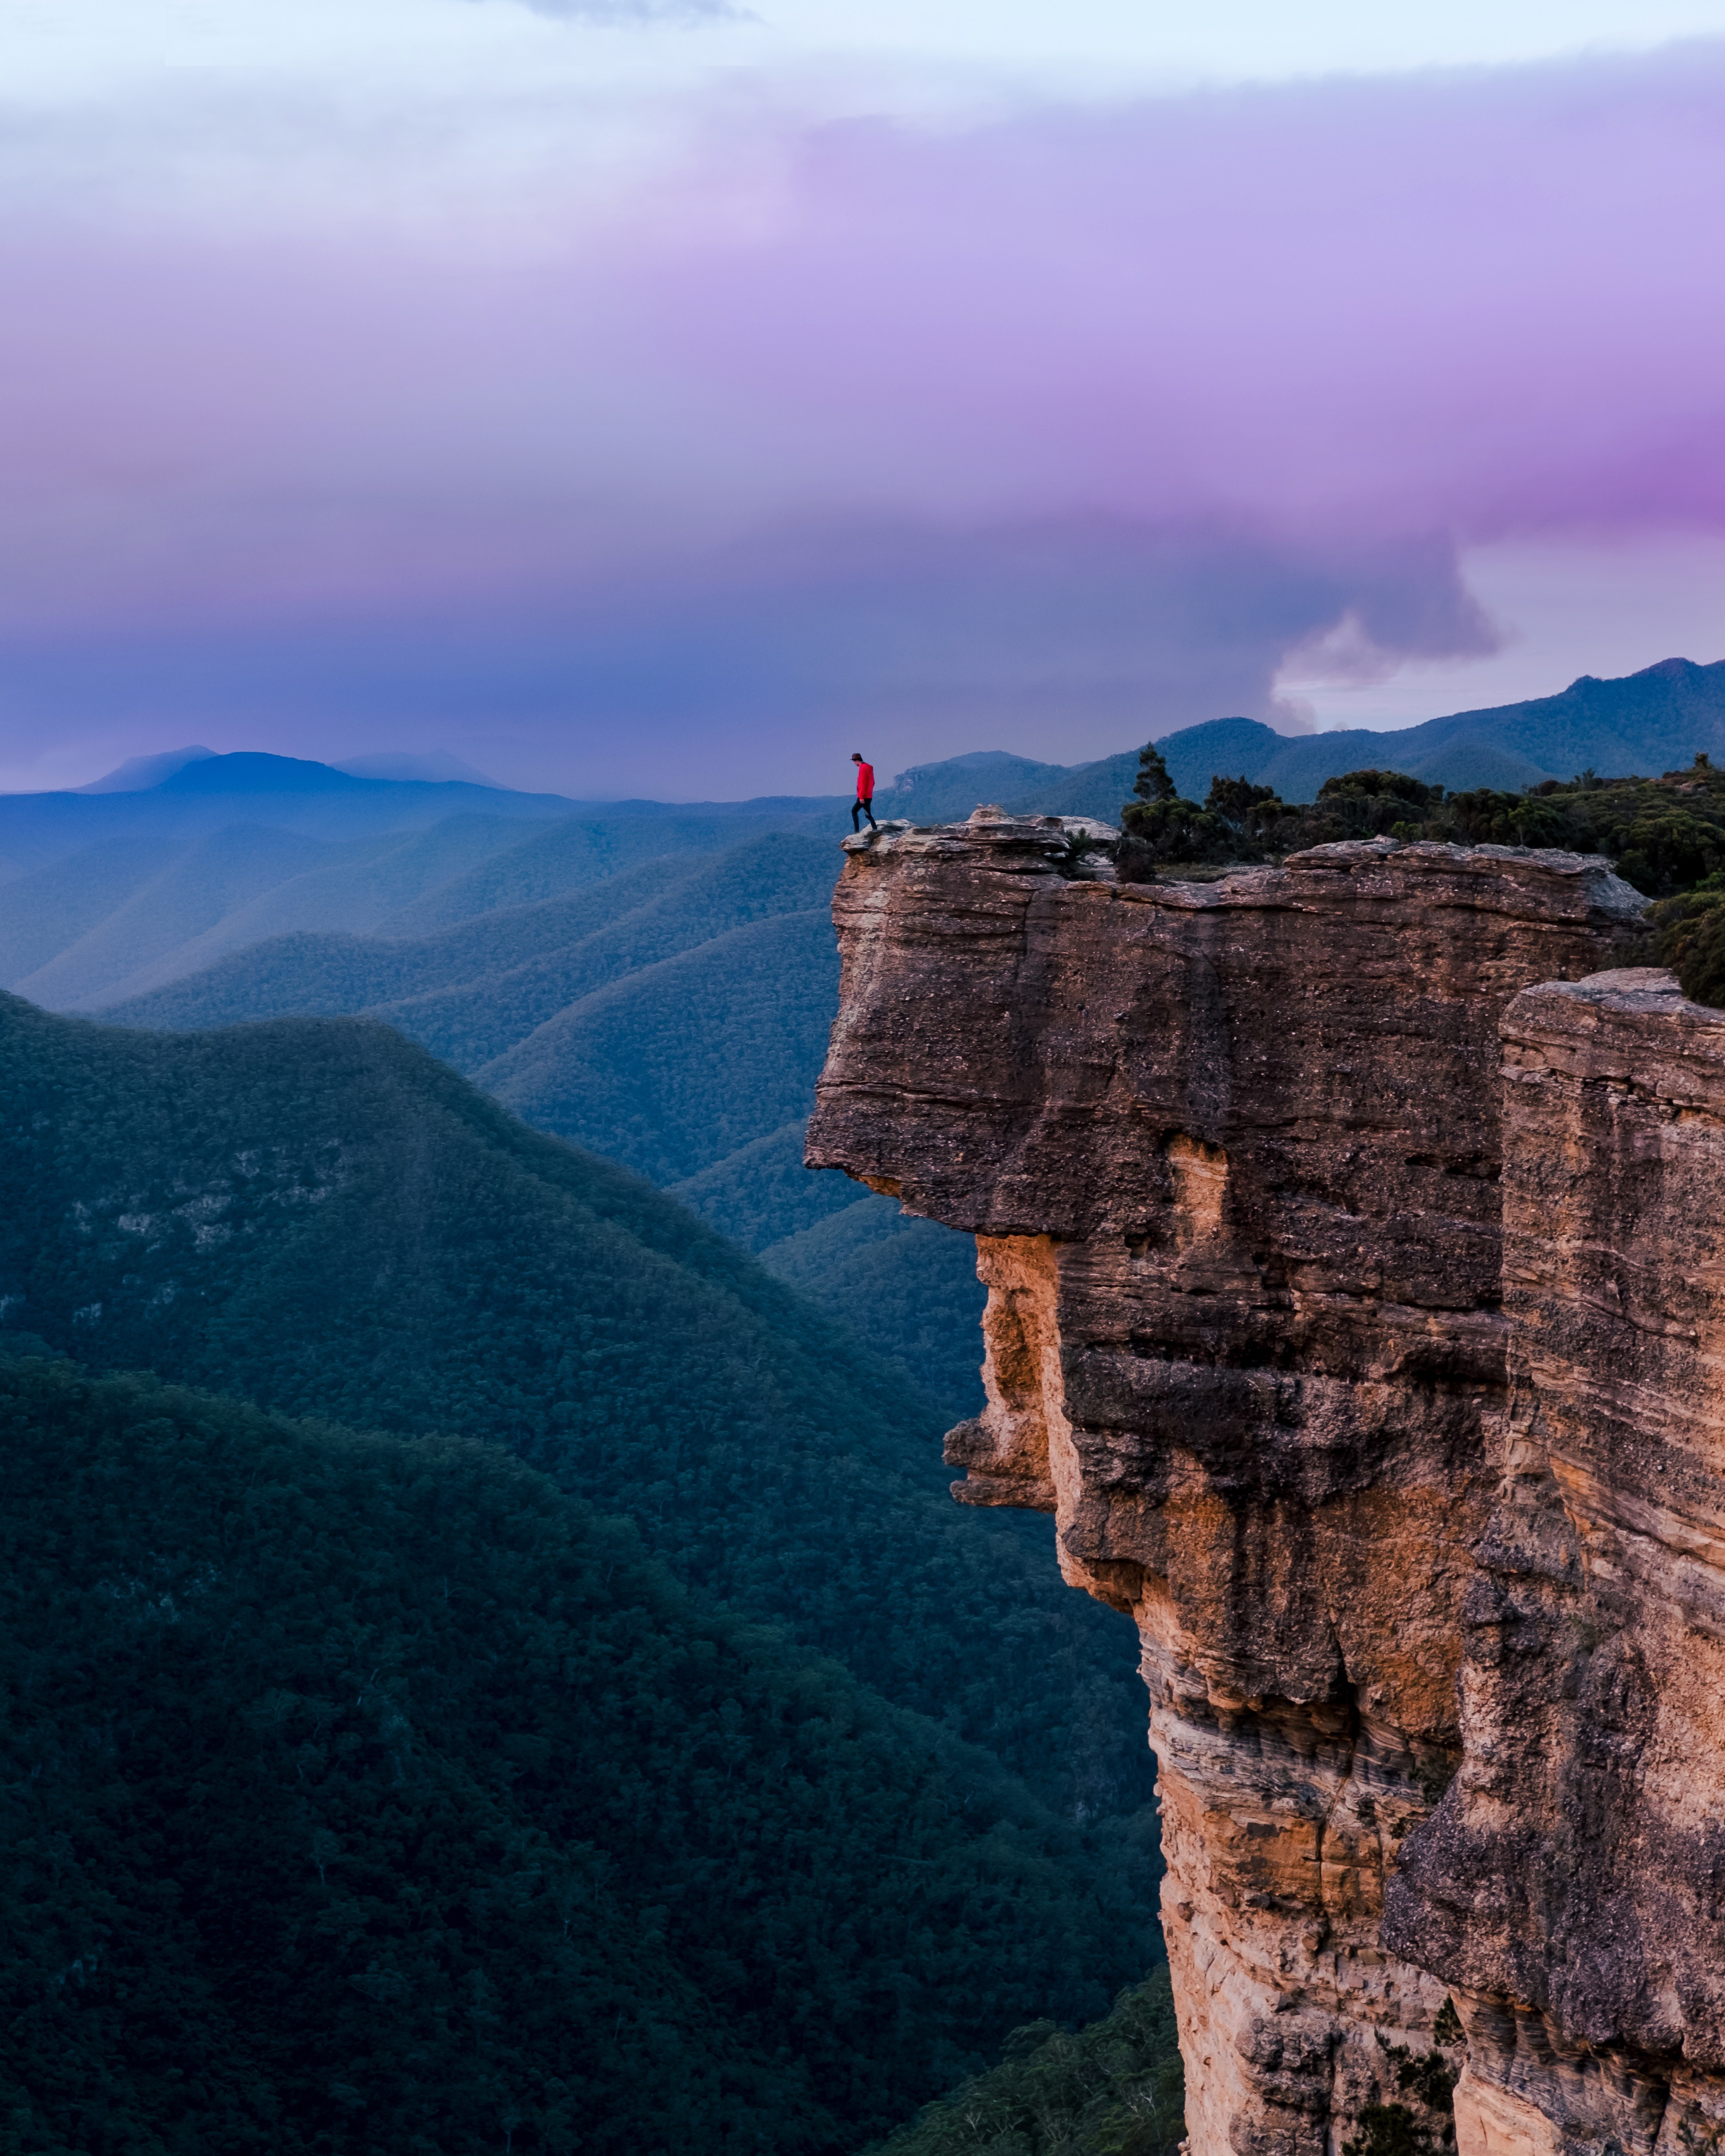 australia, loneliness, sydney, precipice, break, nature, cliff, human, person